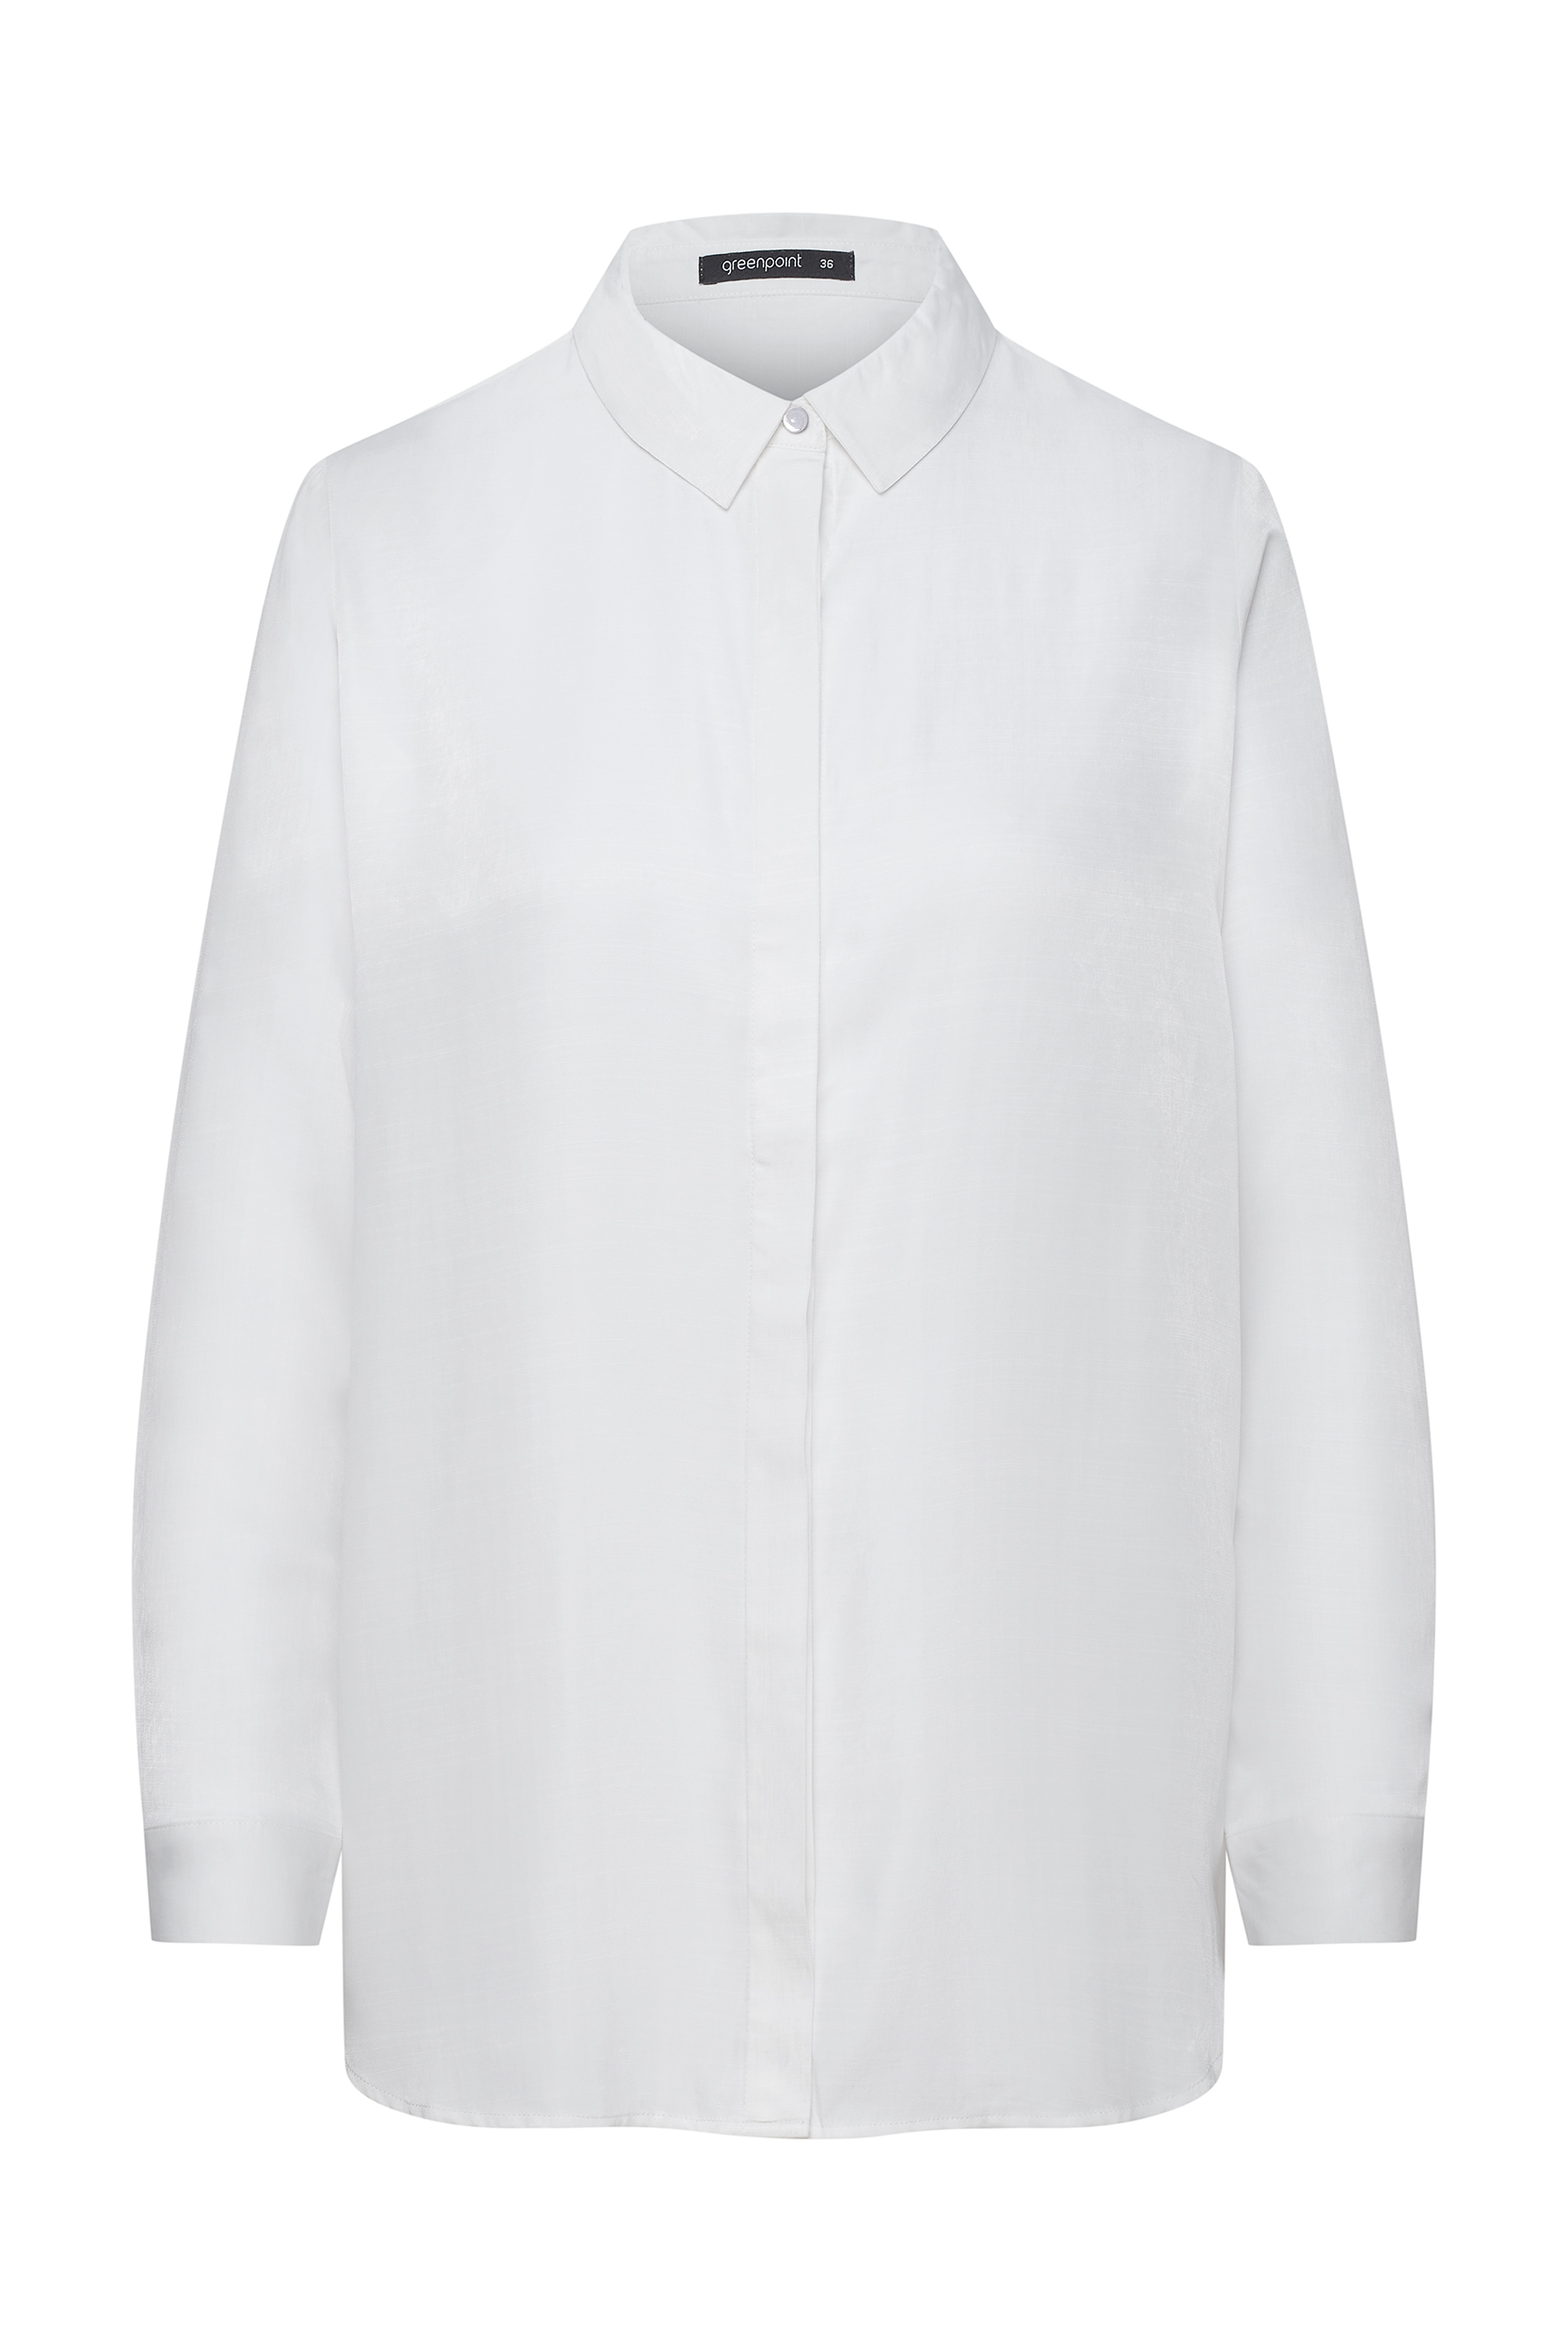 Elegancka bluzka koszulowa, biała